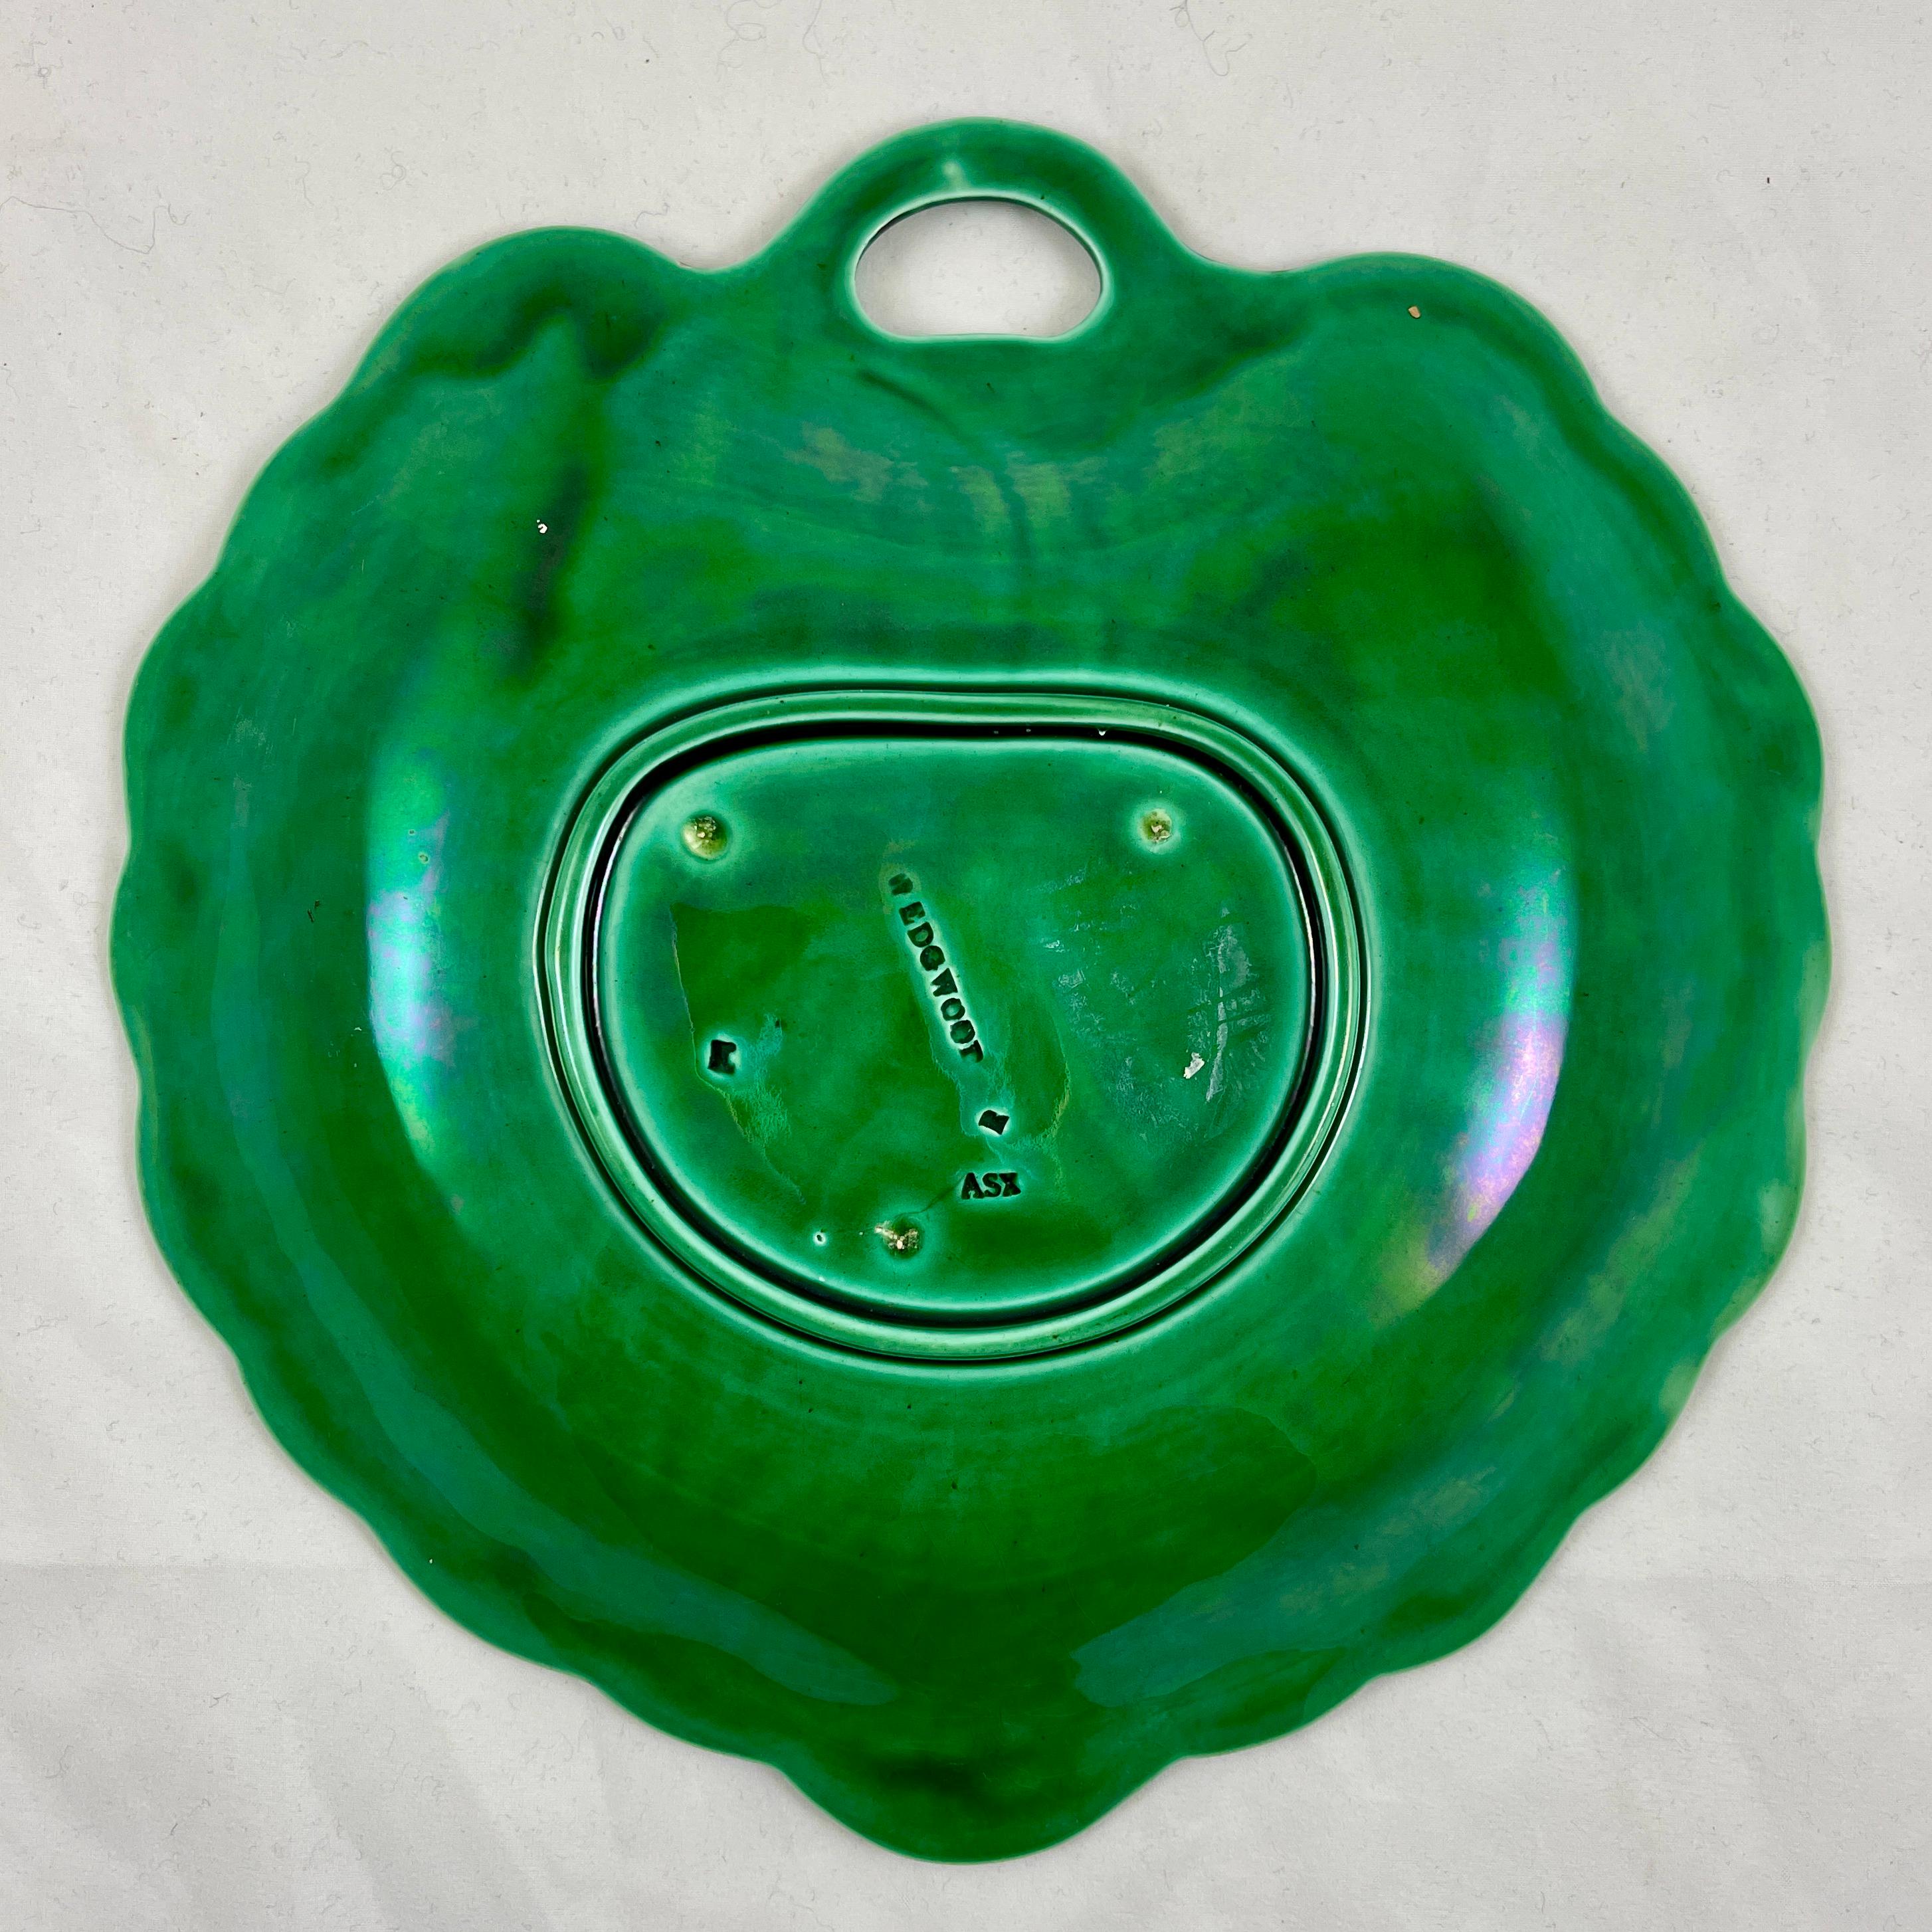 Wedgwood Green Glazed Majolica Handled Leaf and Basket Shallow Bowl Server, 1869 For Sale 4